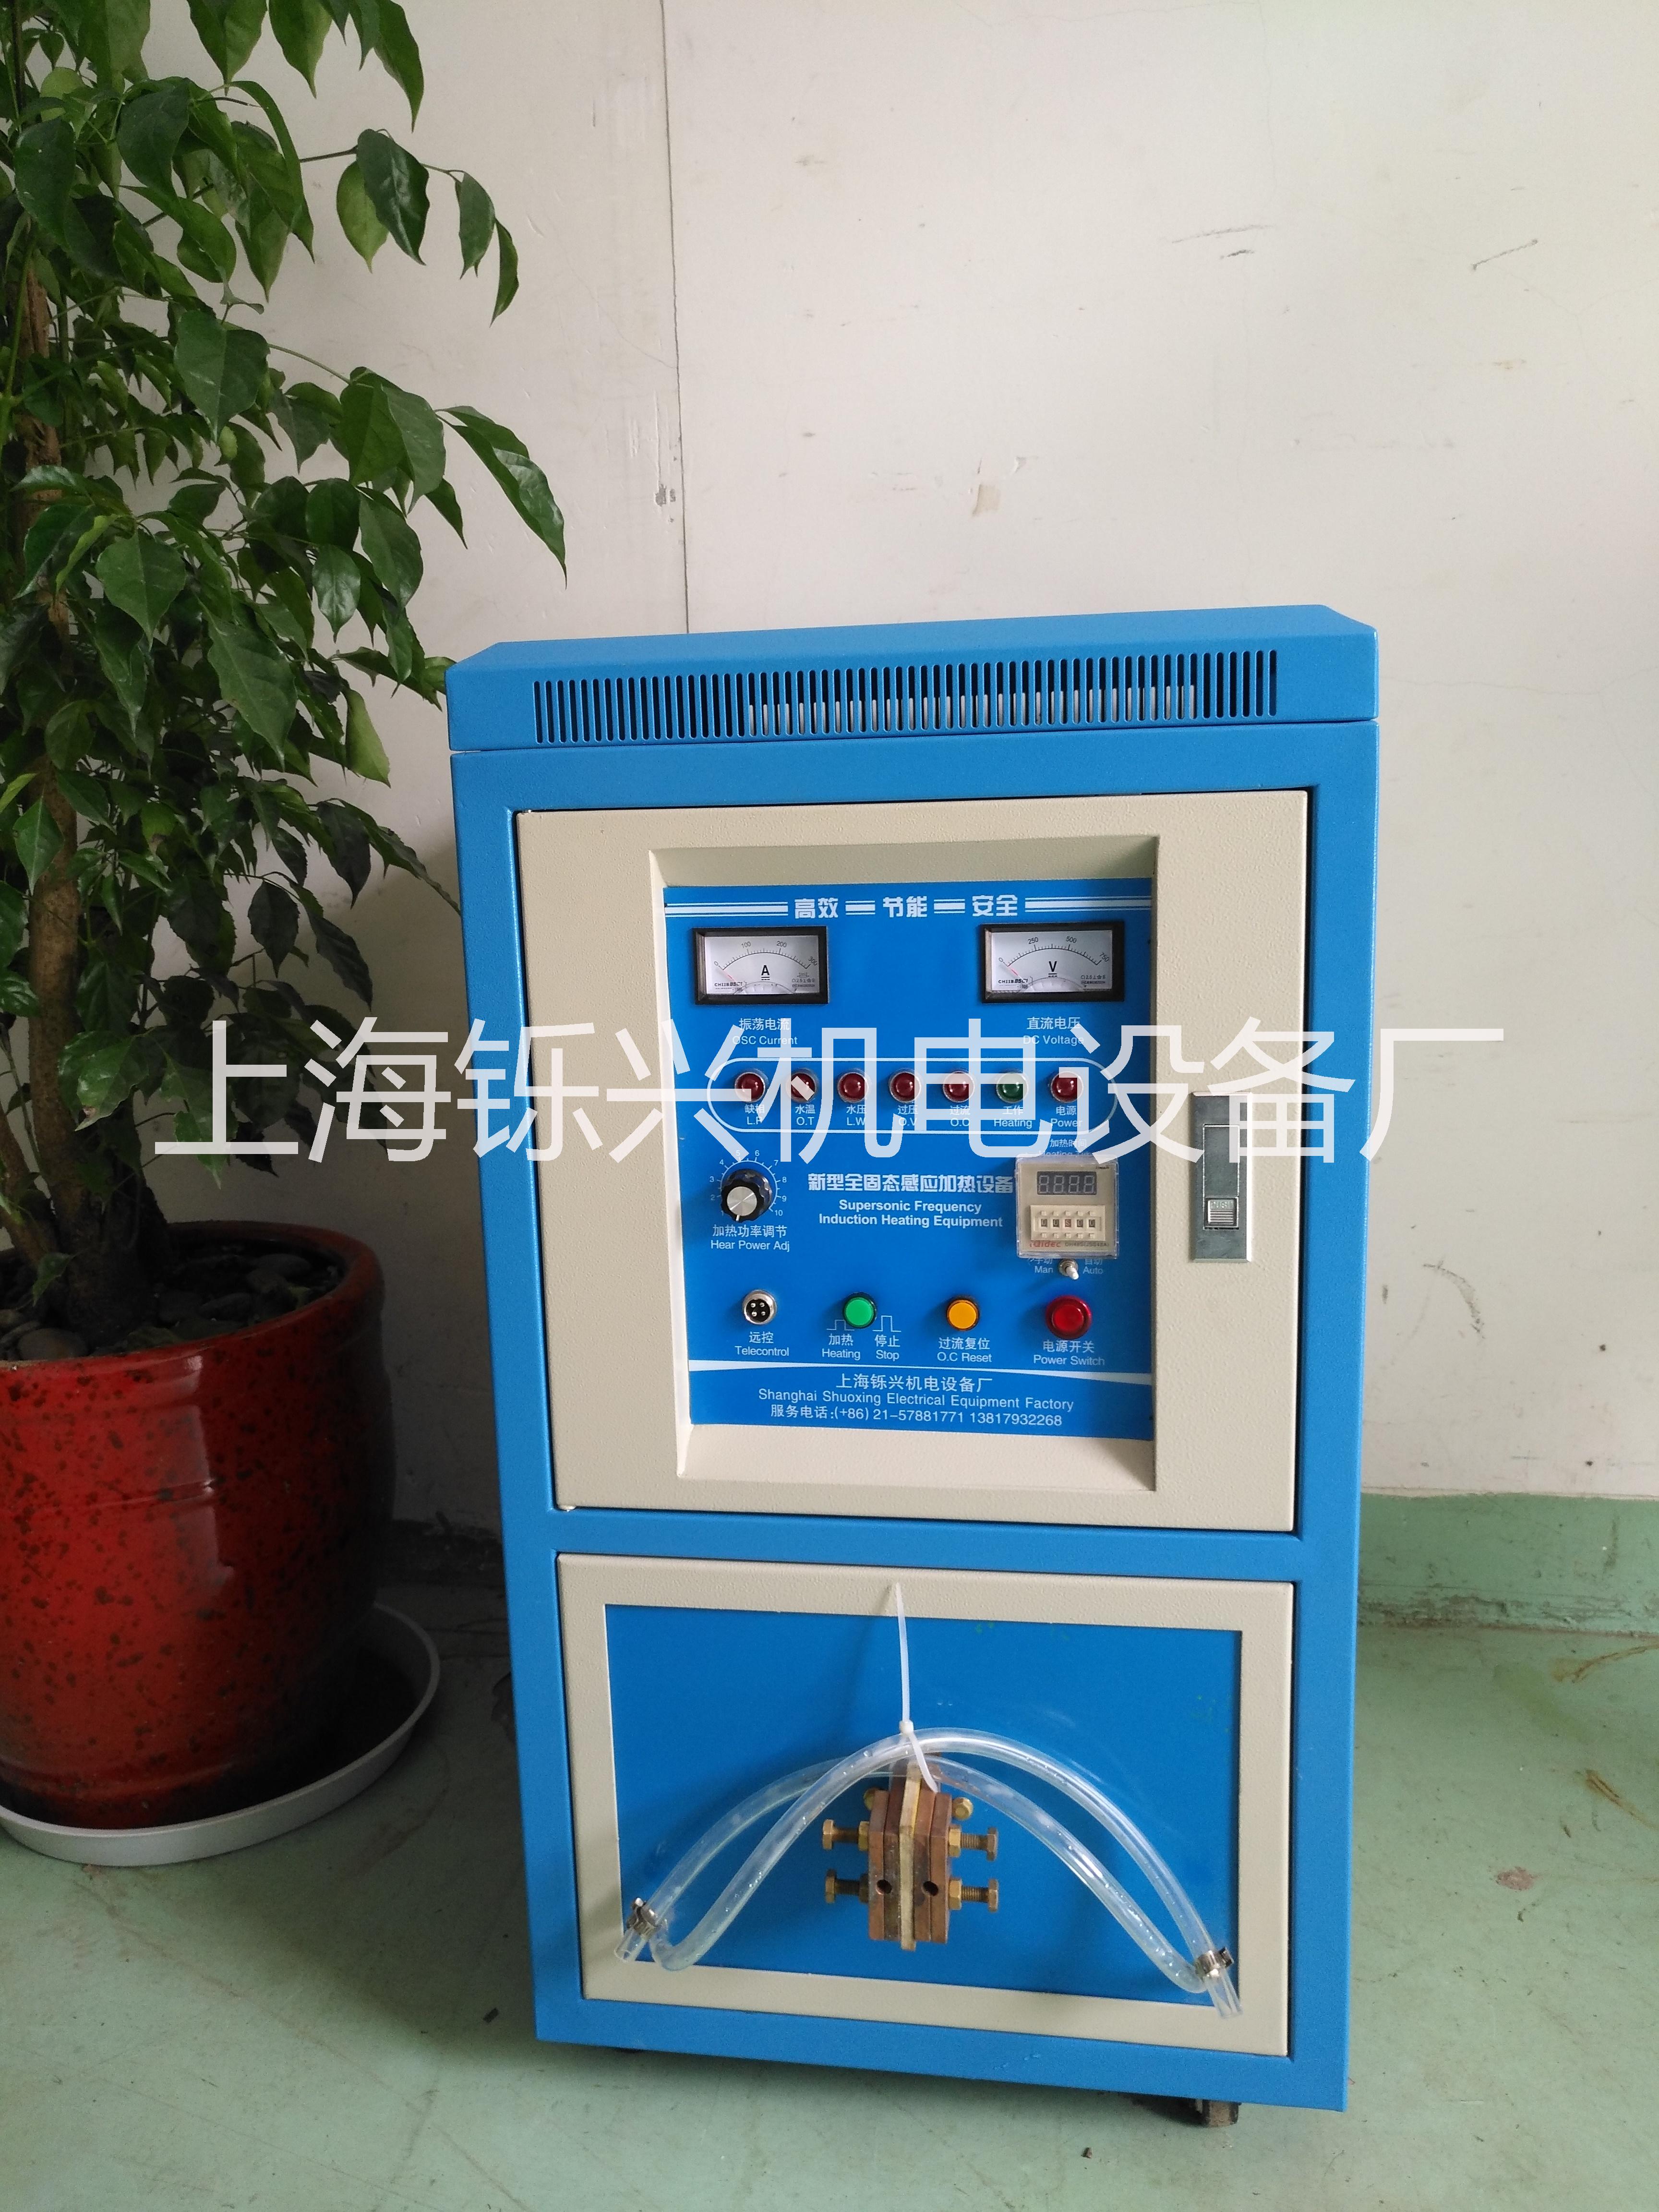 高频感应加热焊机专业品牌上海铄兴批发